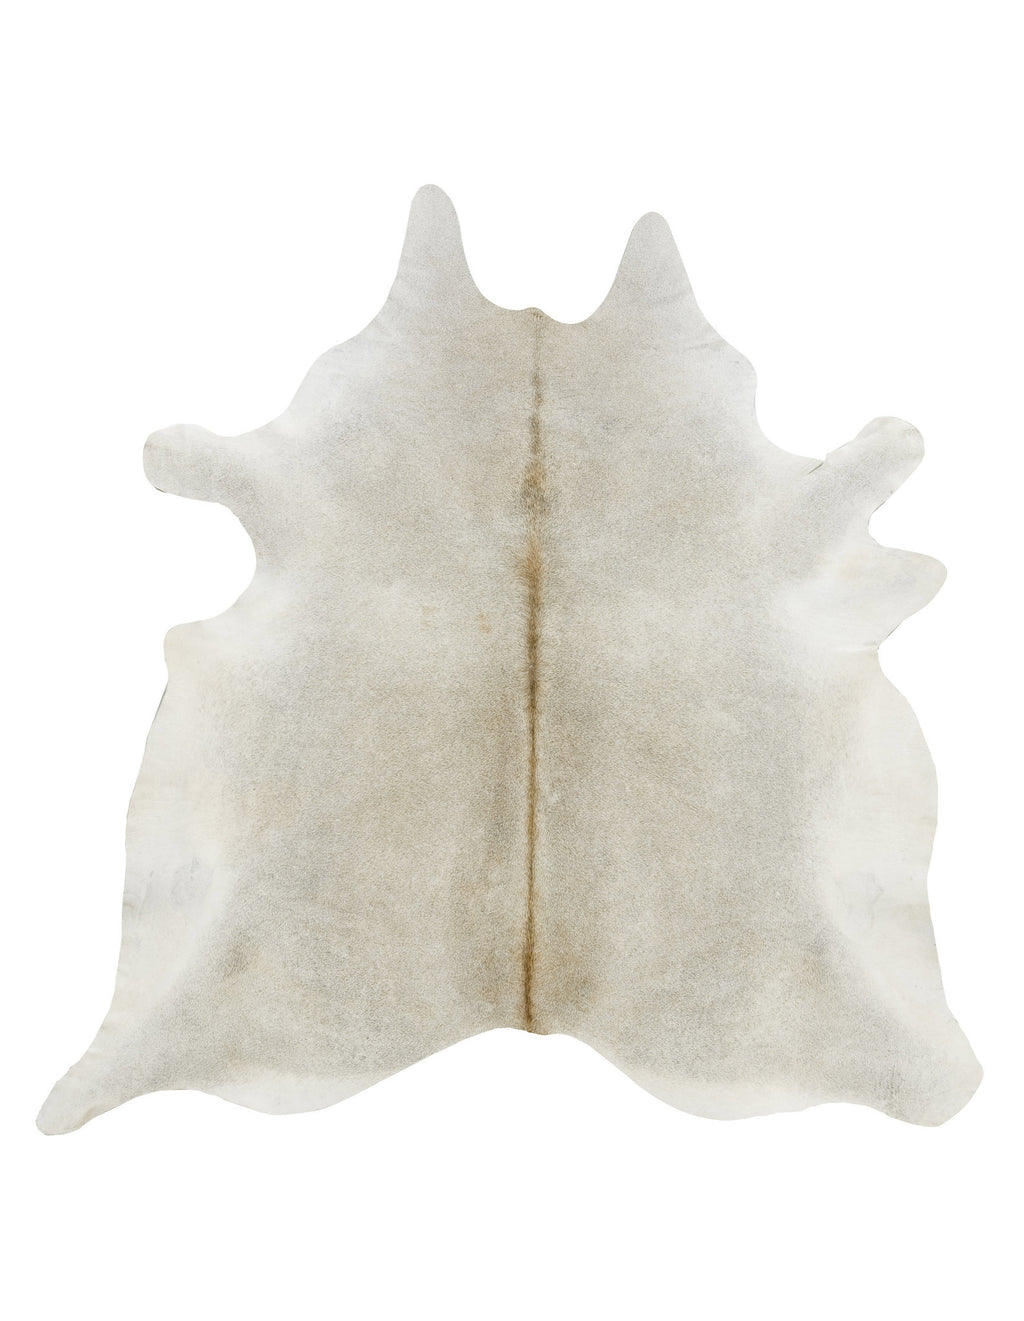 XL Gray beige solid cowhide rug